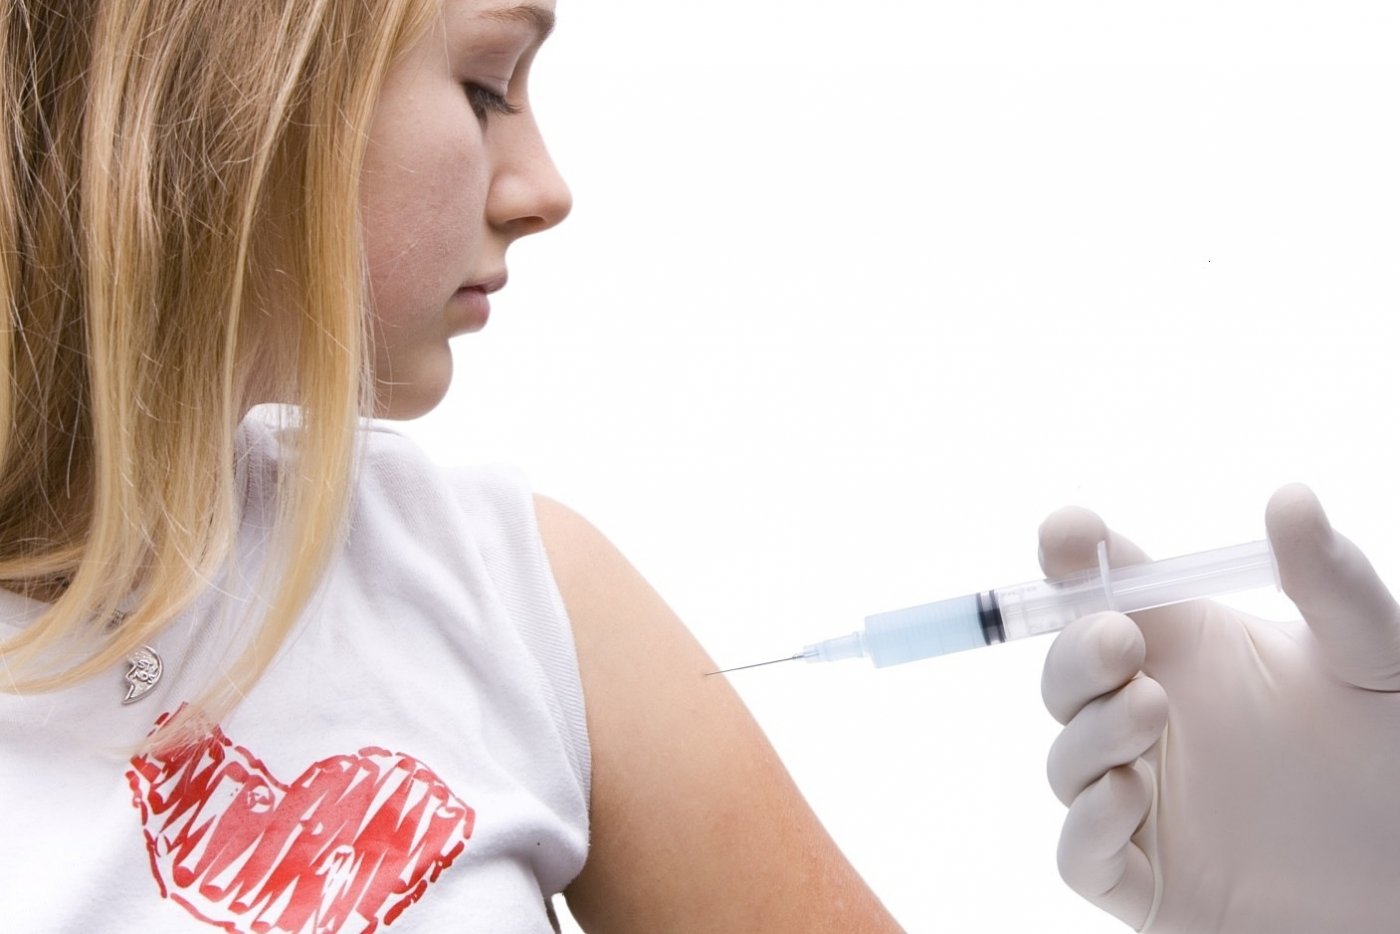 W Gdyni szczepionki przeciwko wirusowi HPV podawane są dziewczynom w wieku 13-14 lat. Źródło: www.zdrowie.gdynia.pl